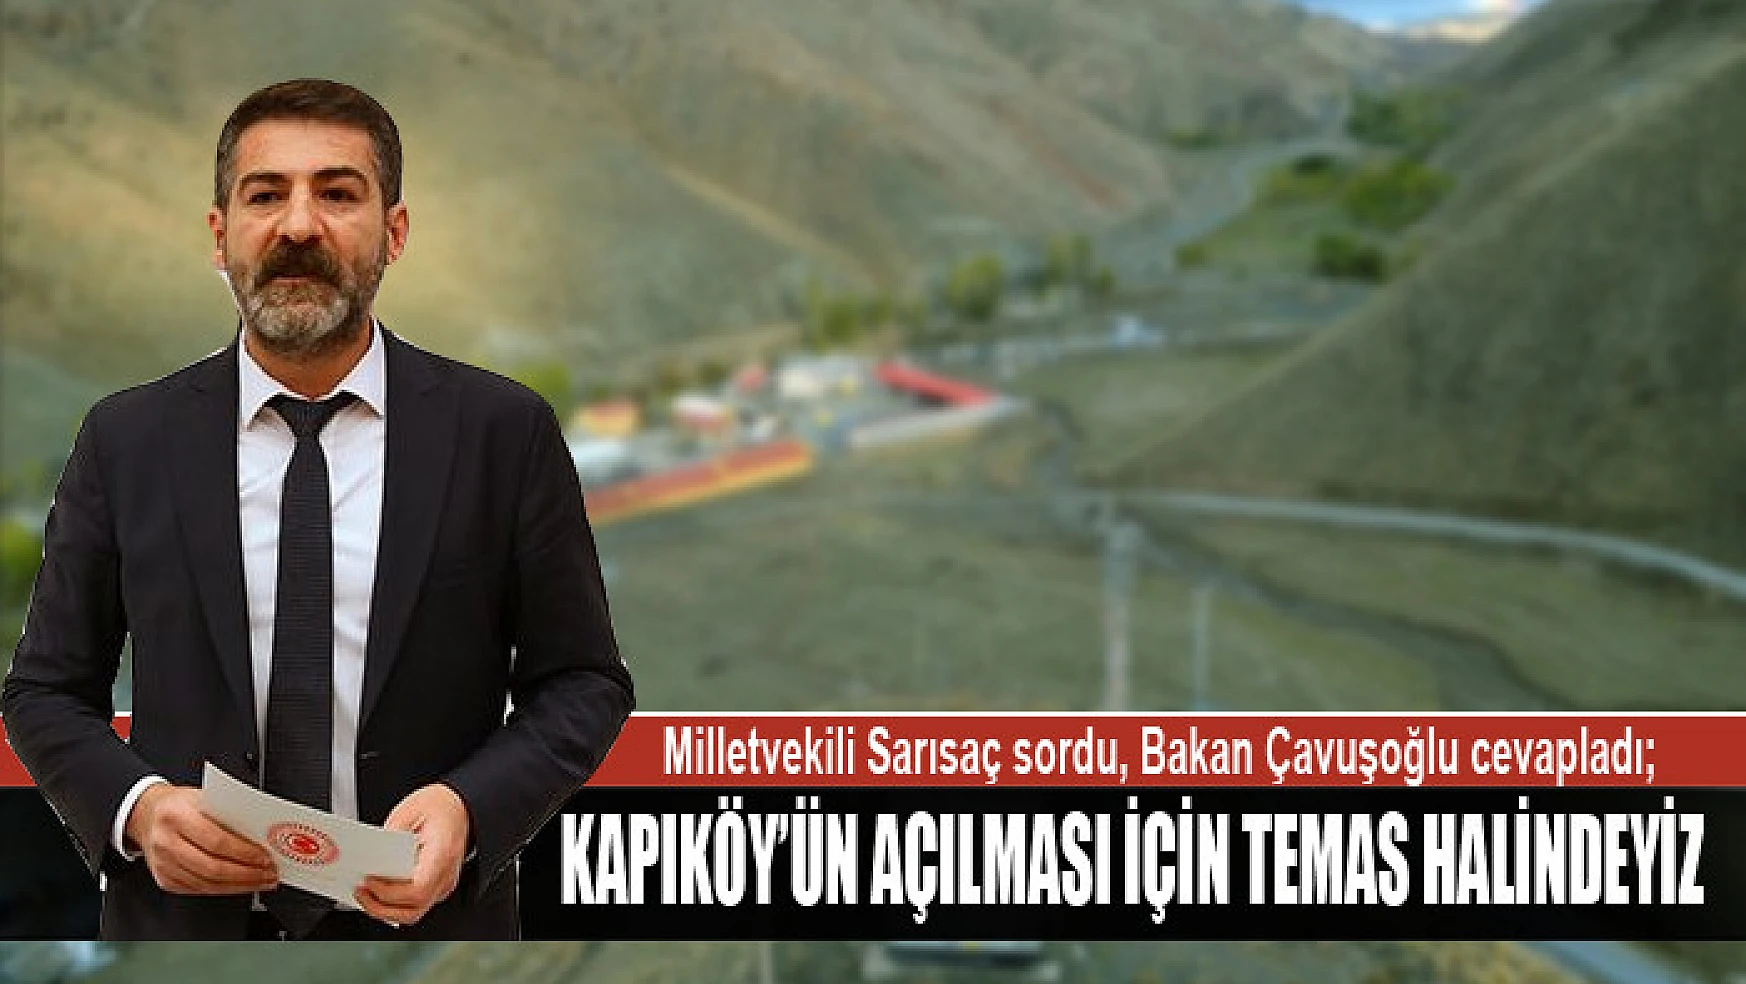 Milletvekili Sarısaç sordu, Bakan Çavuşoğlu cevapladı Kapıköy'ün açılması için temas halindeyiz